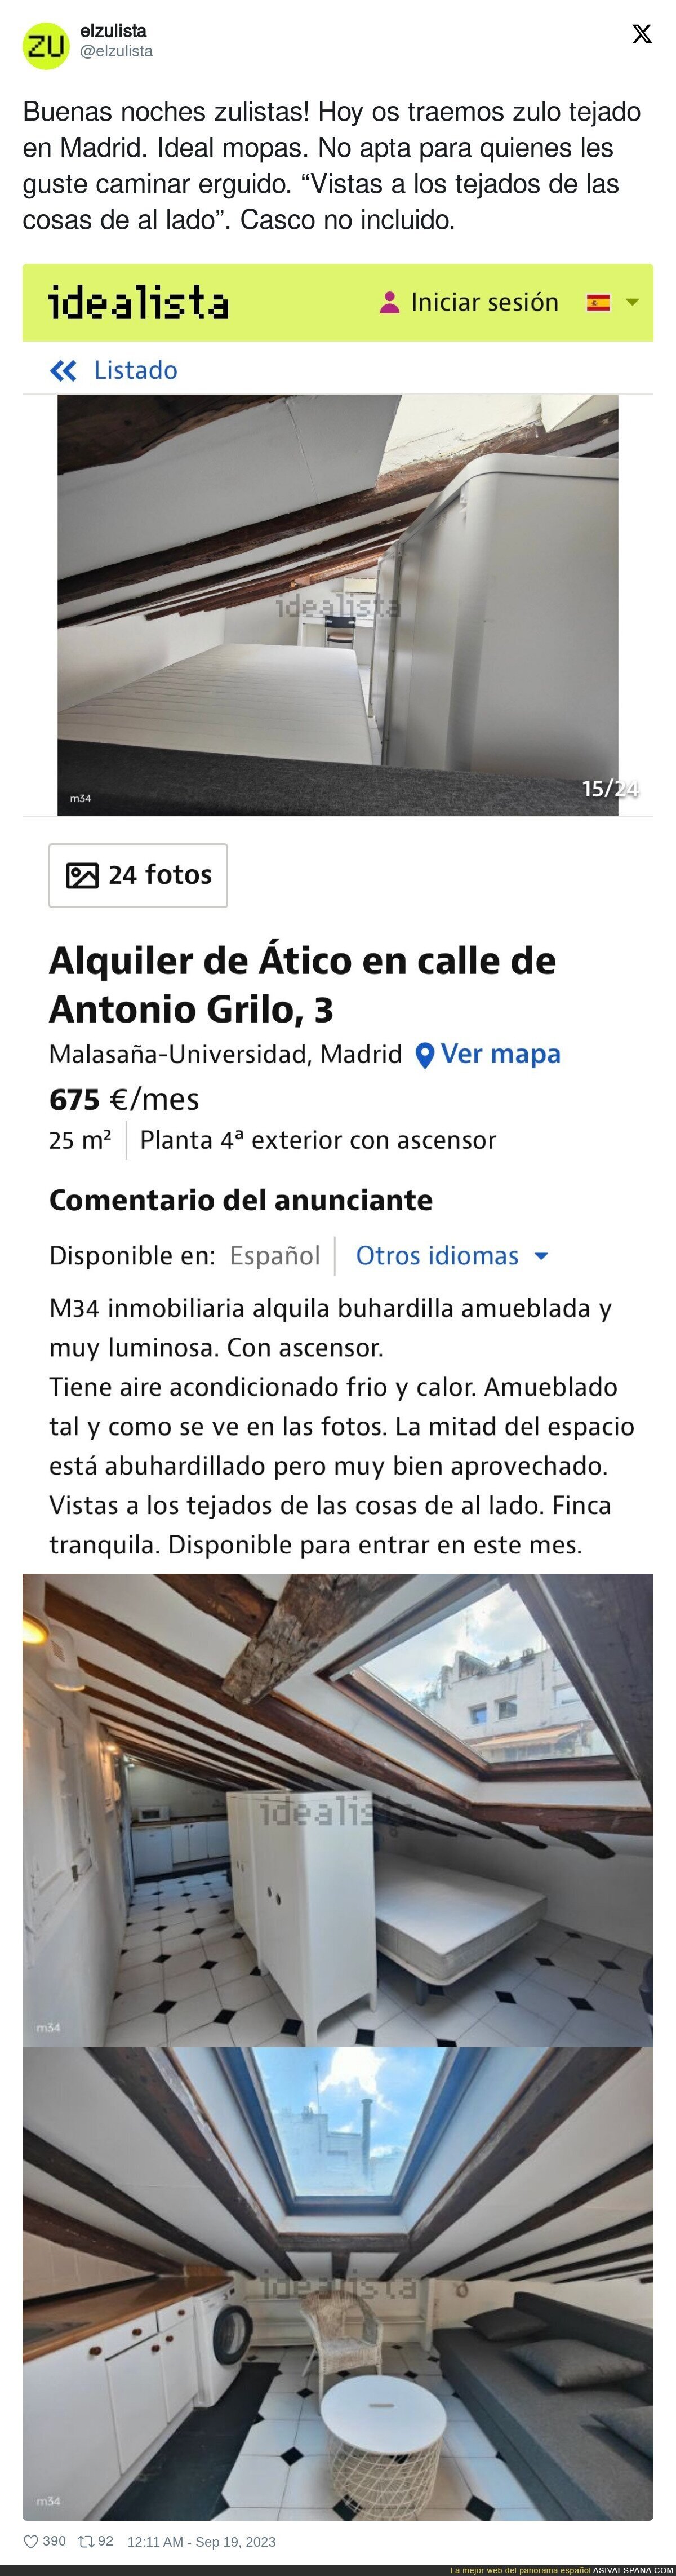 Vergüenza absoluta por el precio de este ático en Madrid